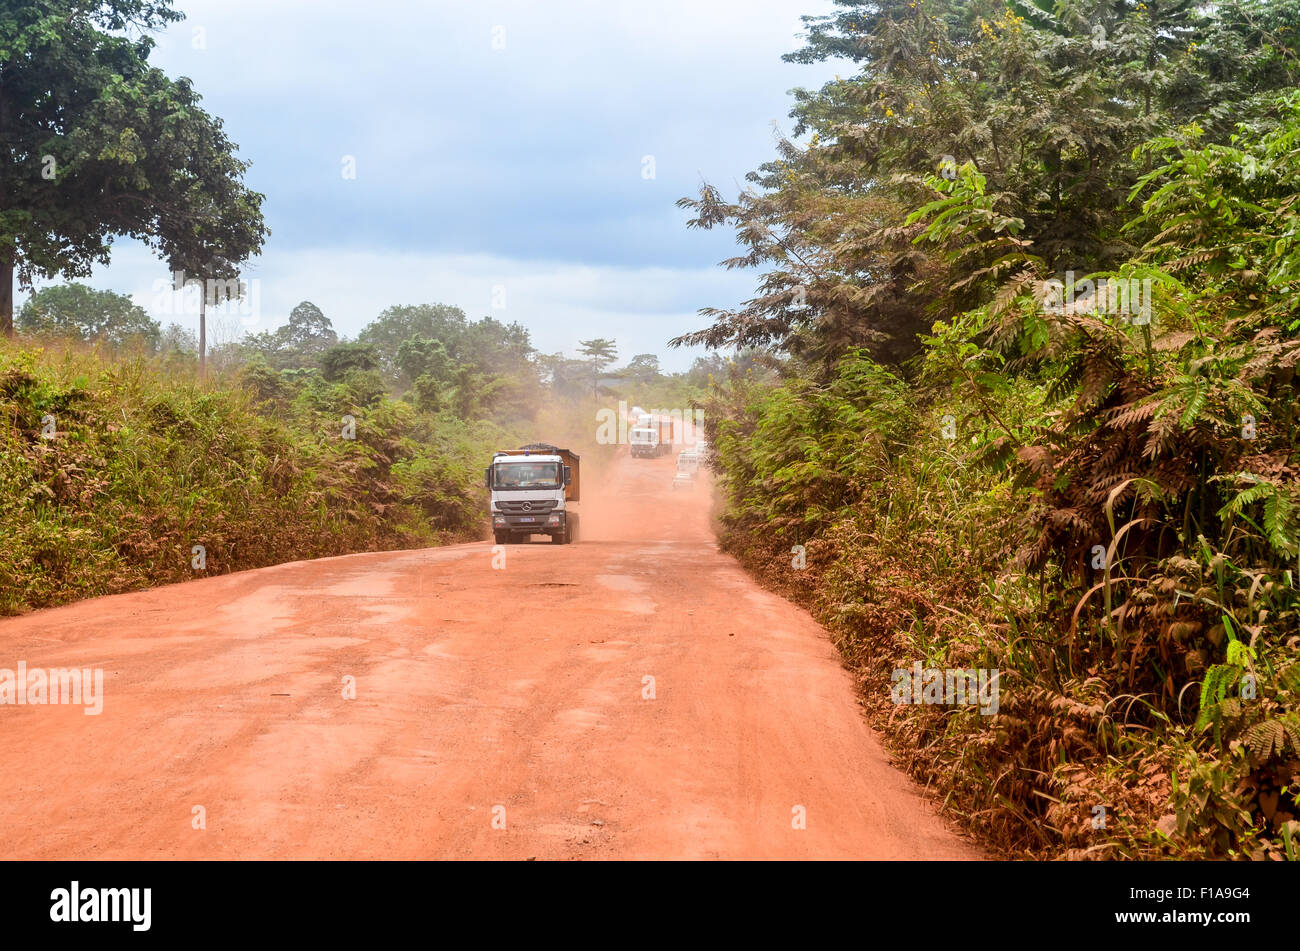 LKW auf einem Feldweg rote Erde in ländlichen Regionen Afrikas Stockfoto